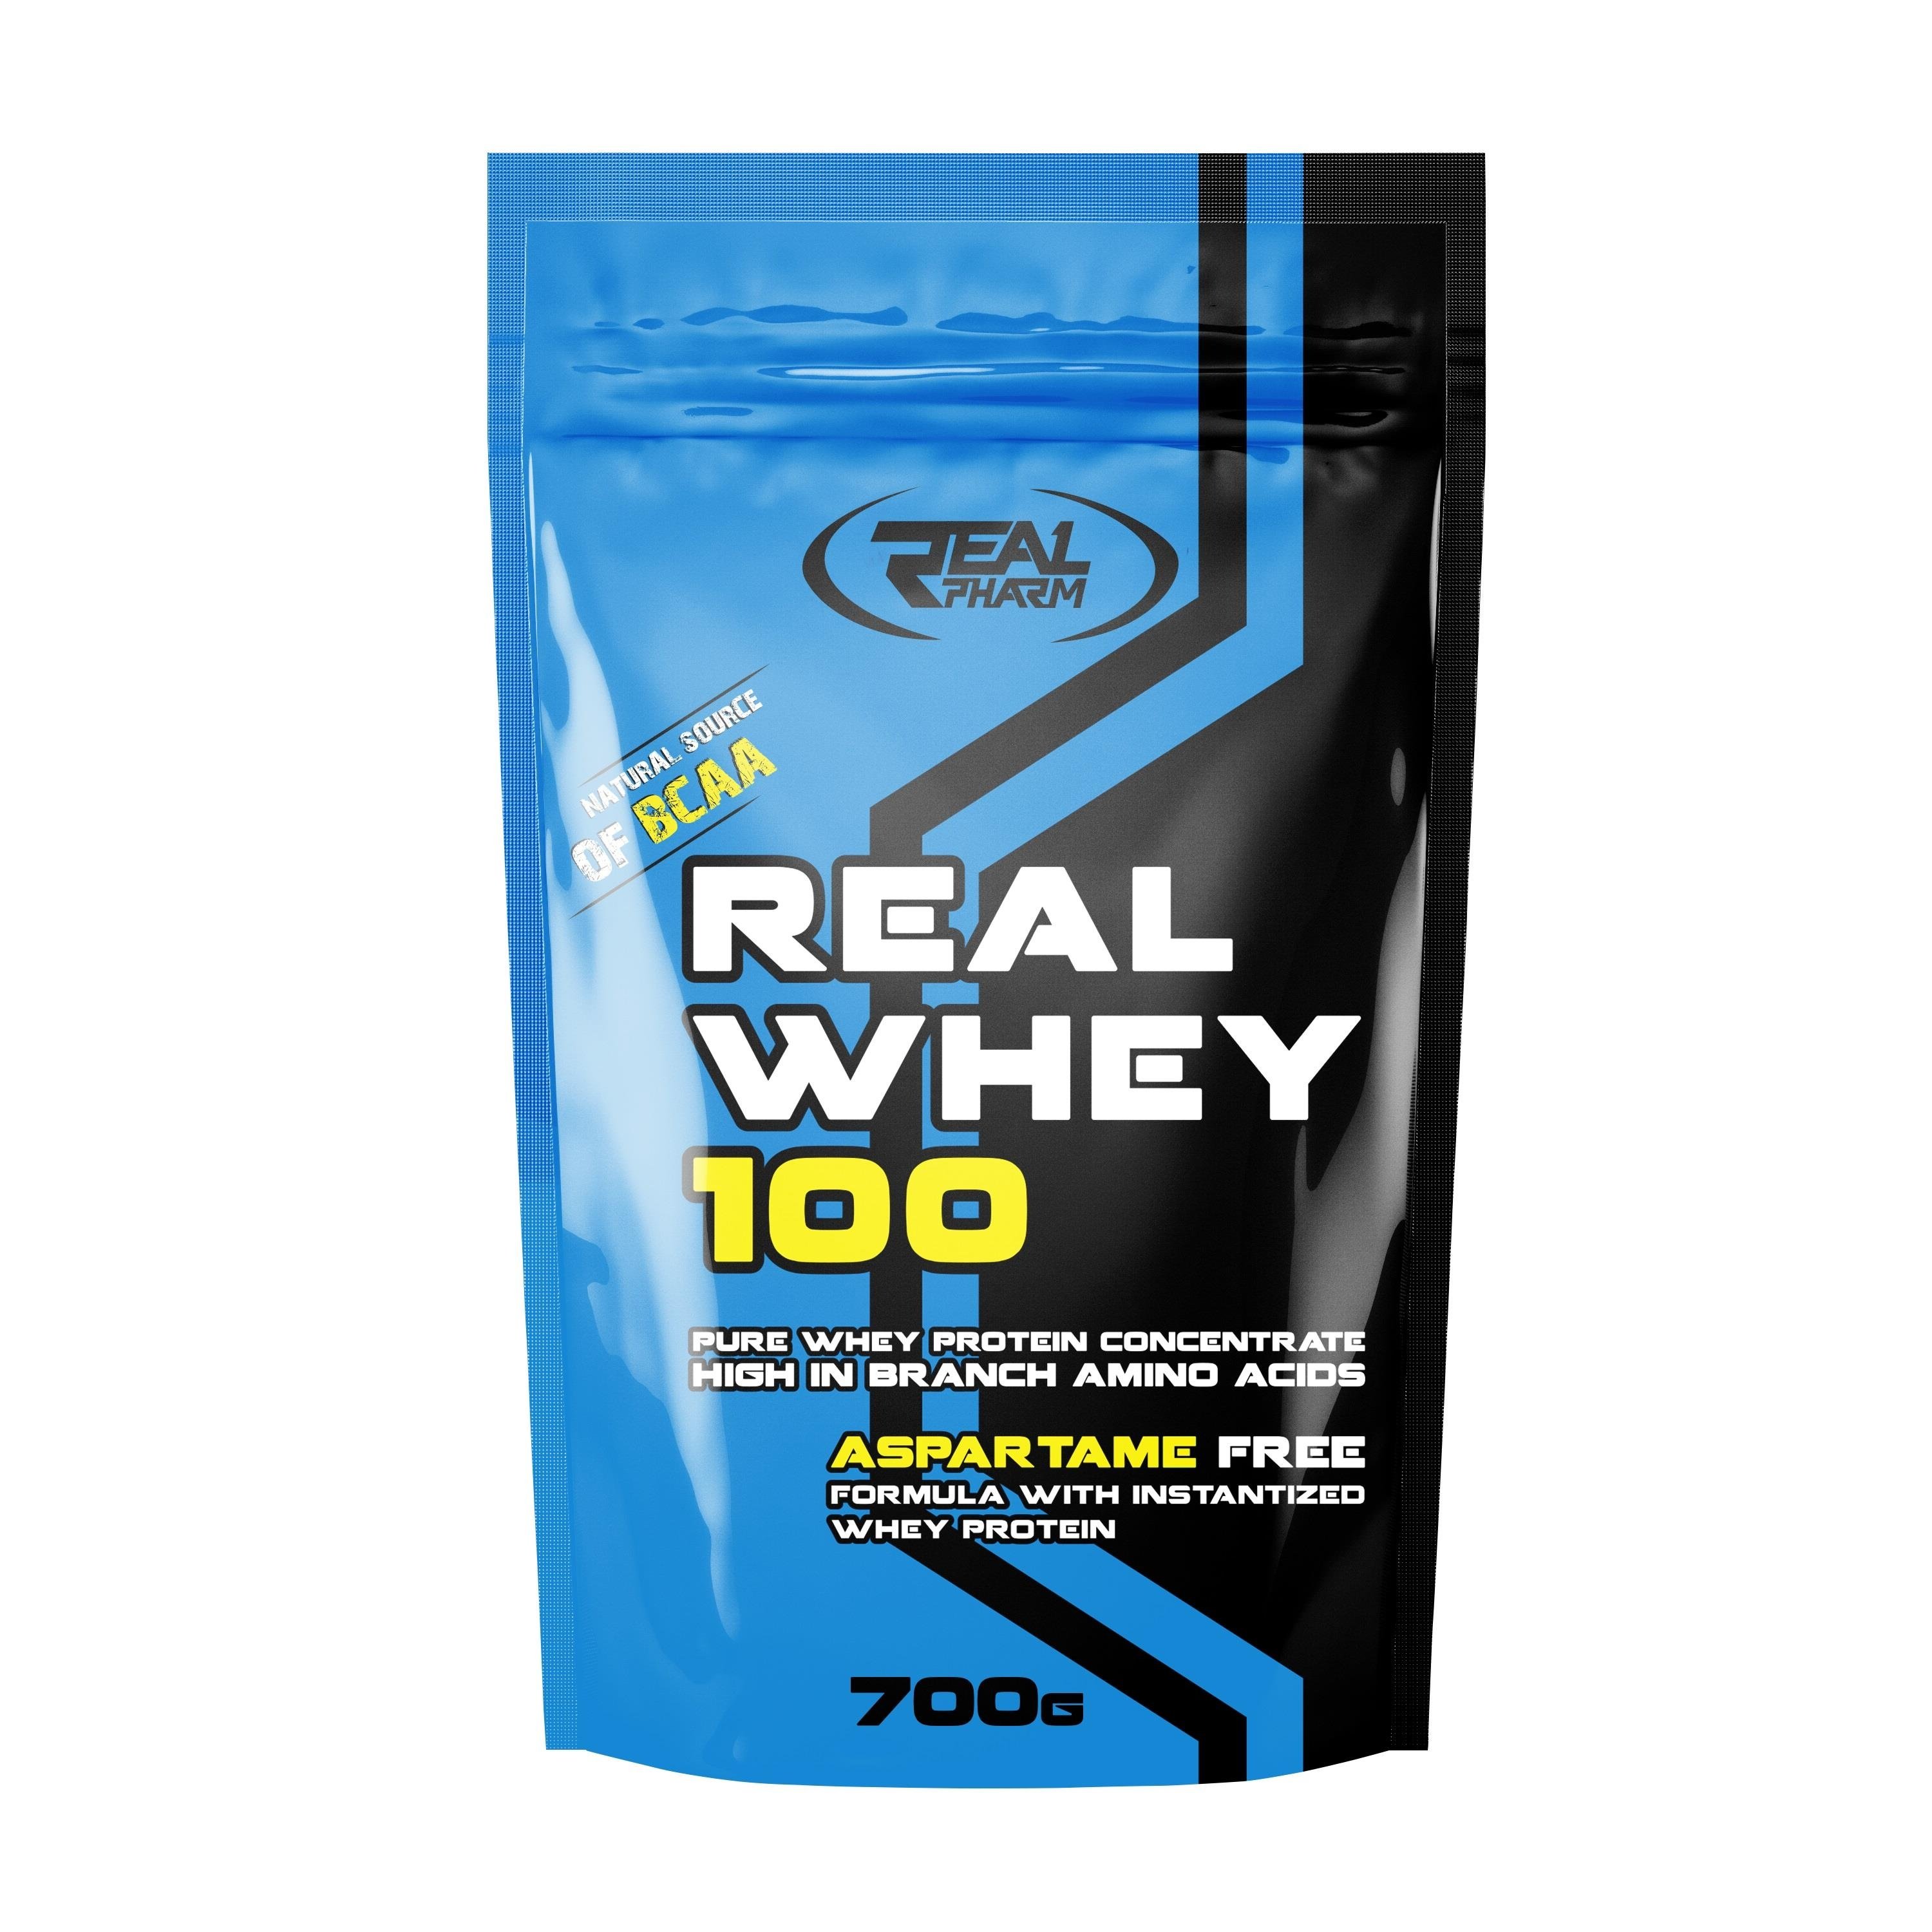 Real Whey 100, 700 g, Real Pharm. Suero concentrado. Mass Gain recuperación Anti-catabolic properties 